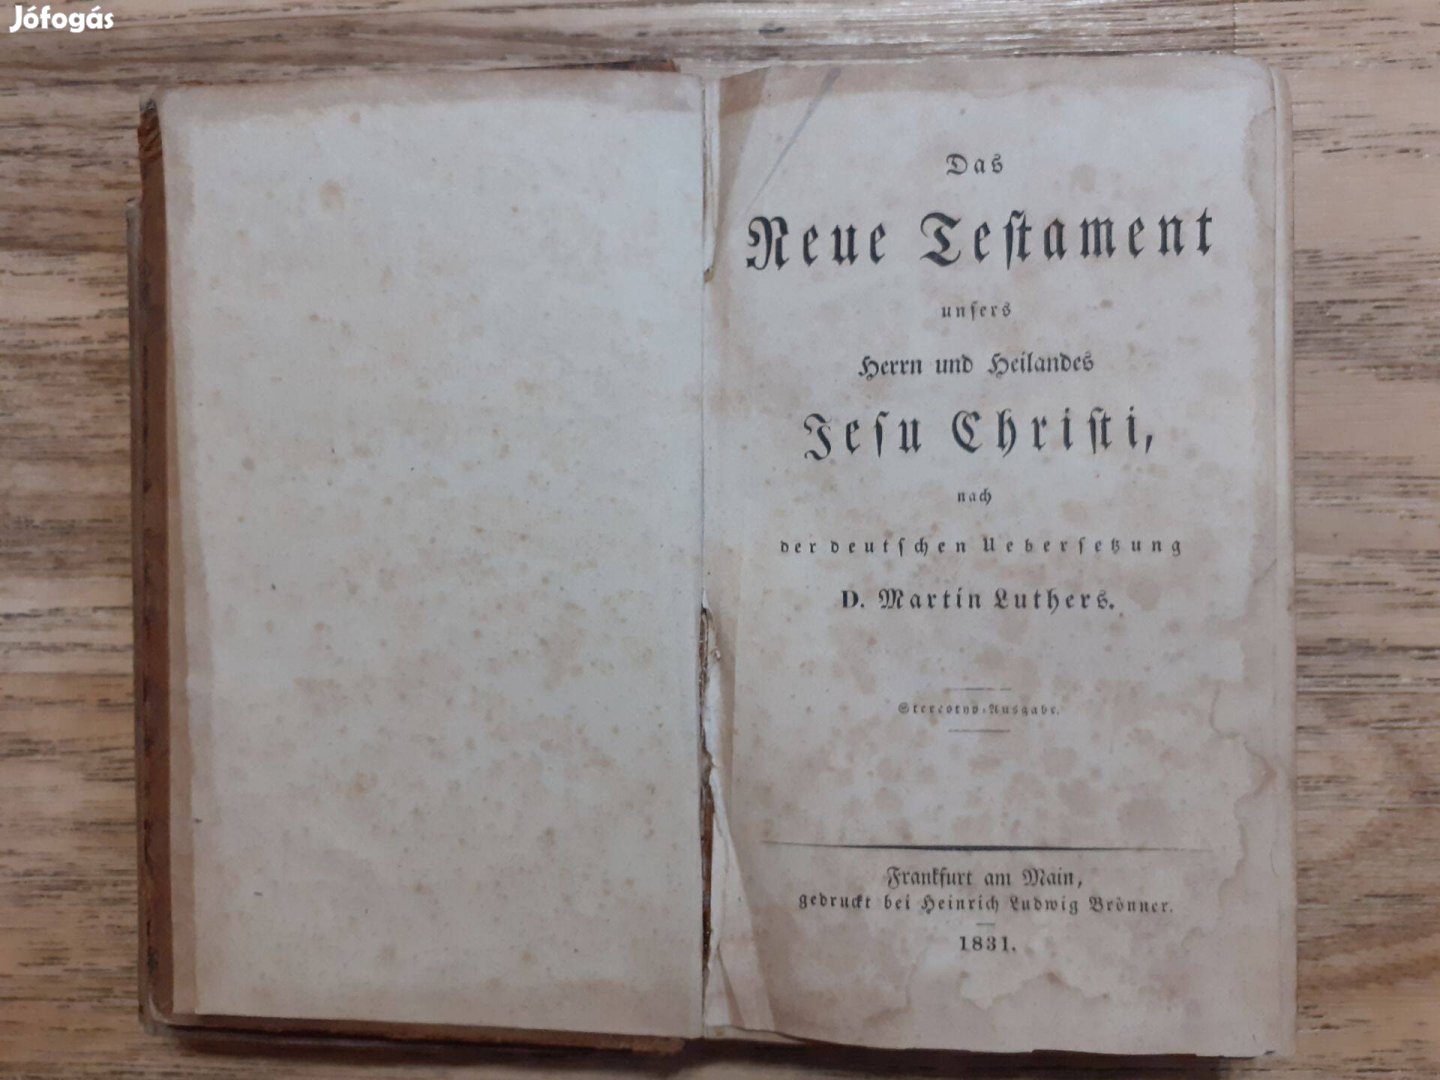 Das Neue Testament (1831)